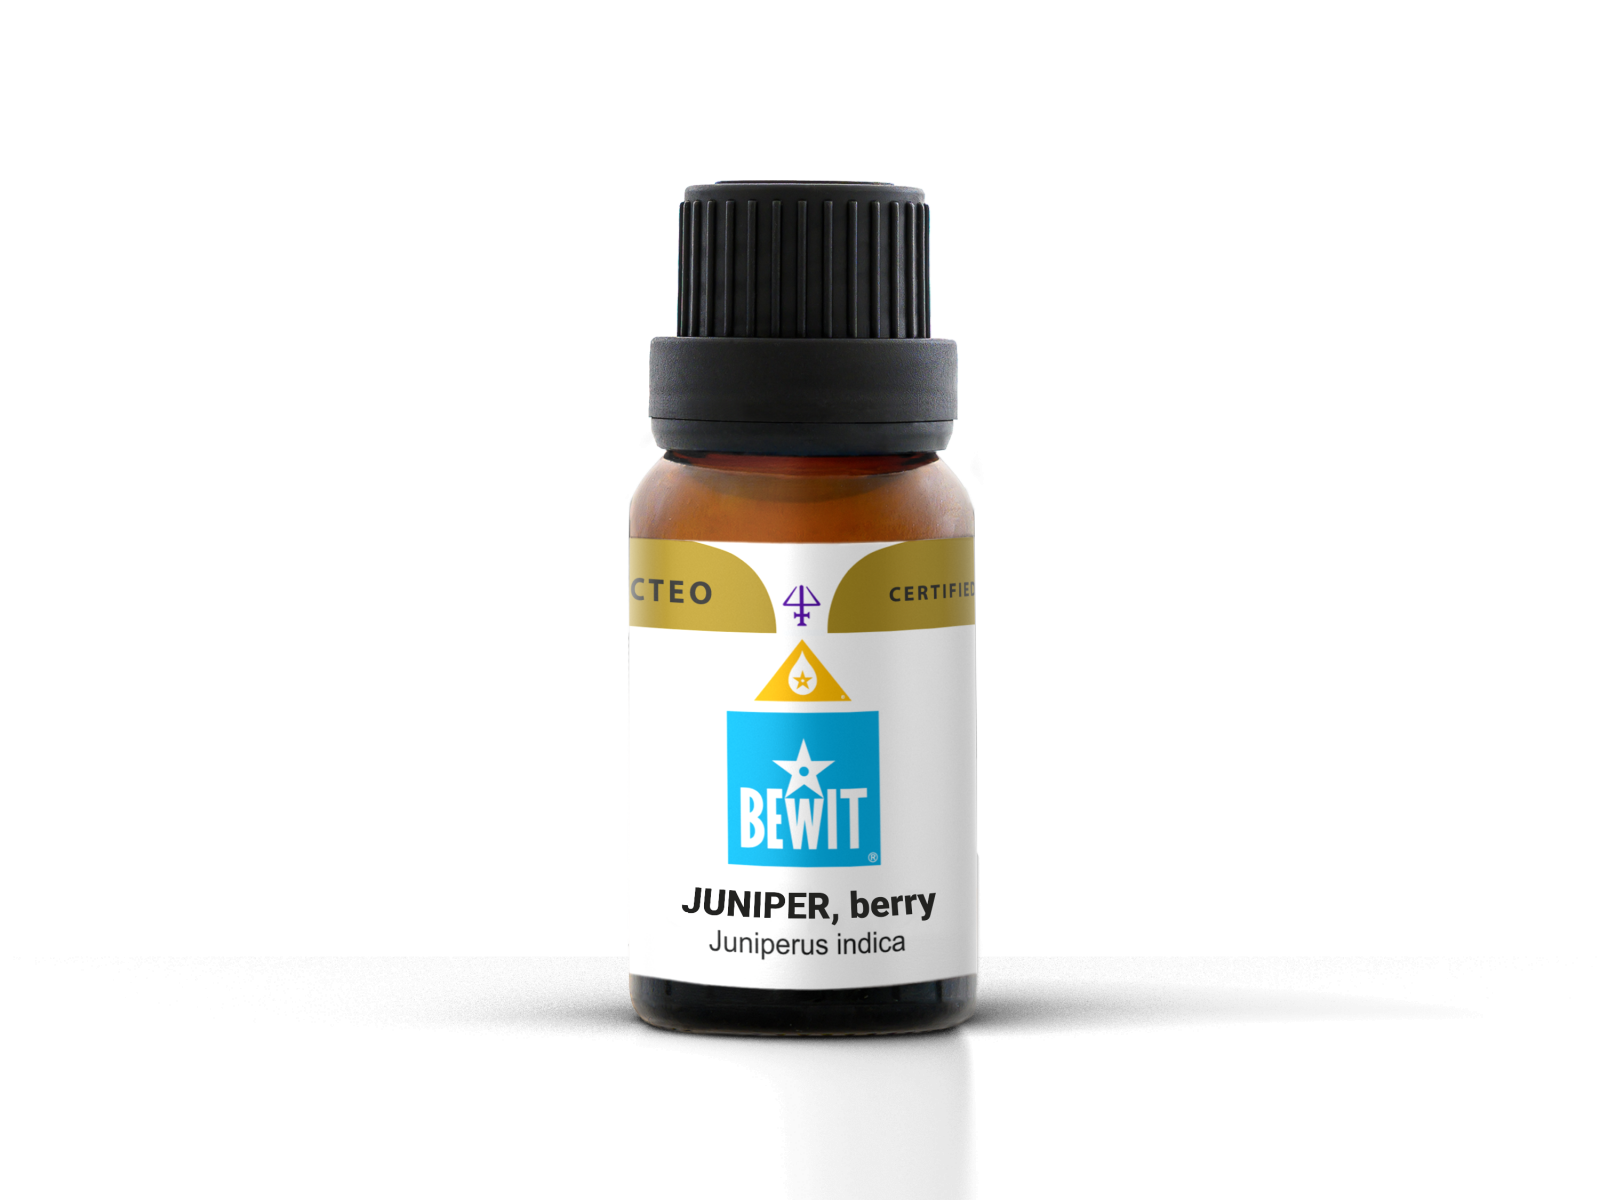 BEWIT Juniper berry - 100% pure essential oil - 2